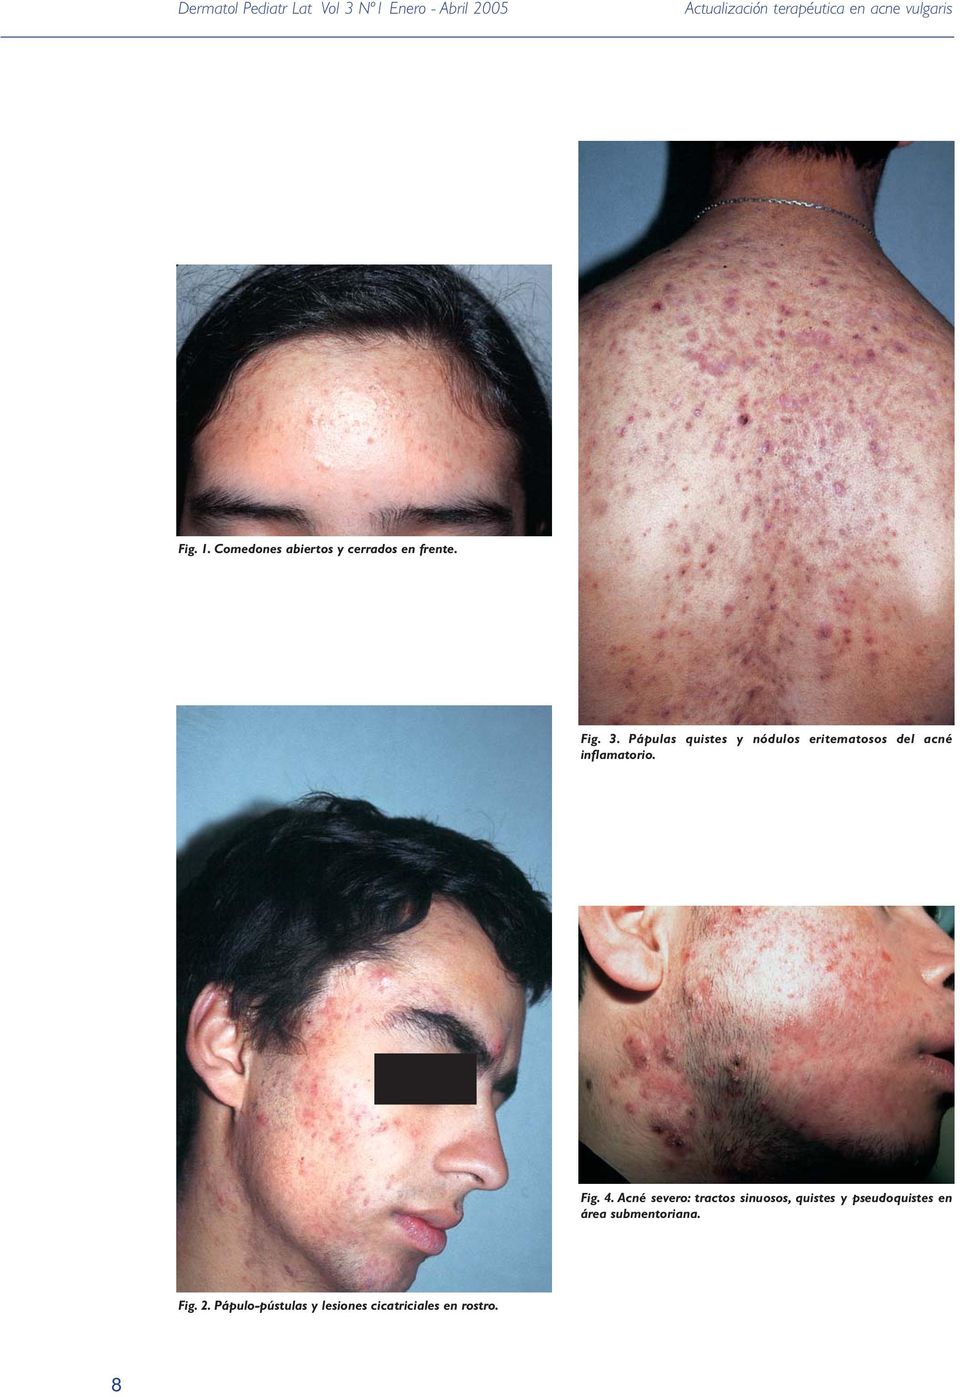 Pápulas quistes y nódulos eritematosos del acné inflamatorio. Fig. 4.